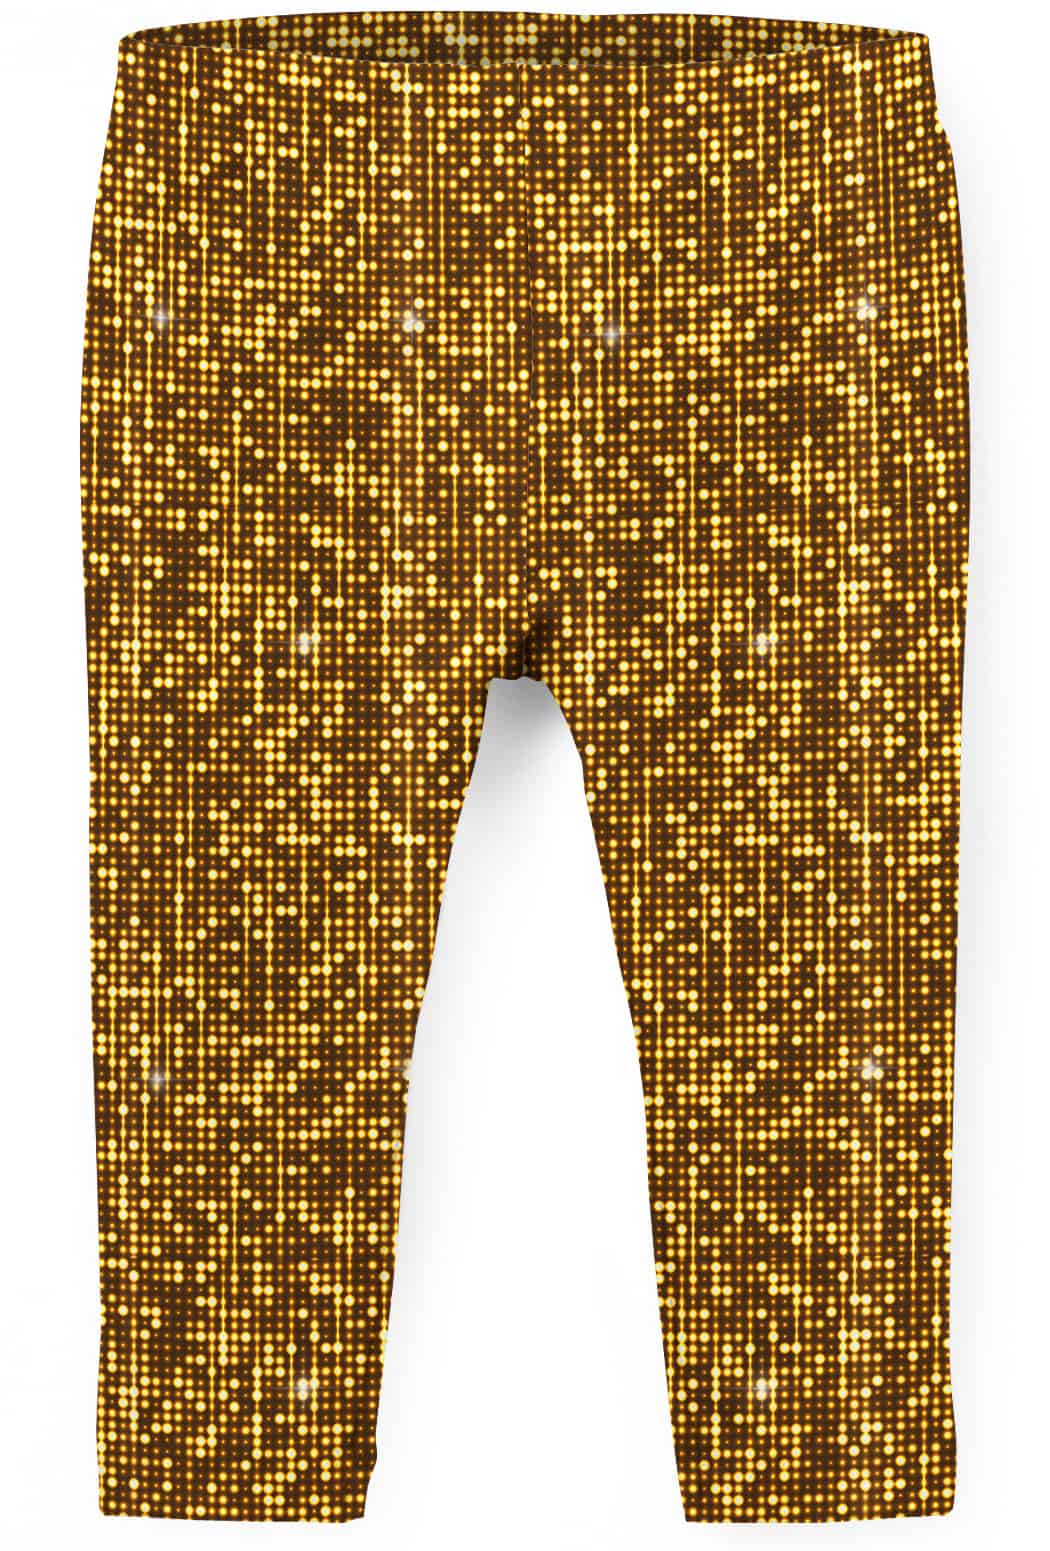 Shimmer Leggings-Gold